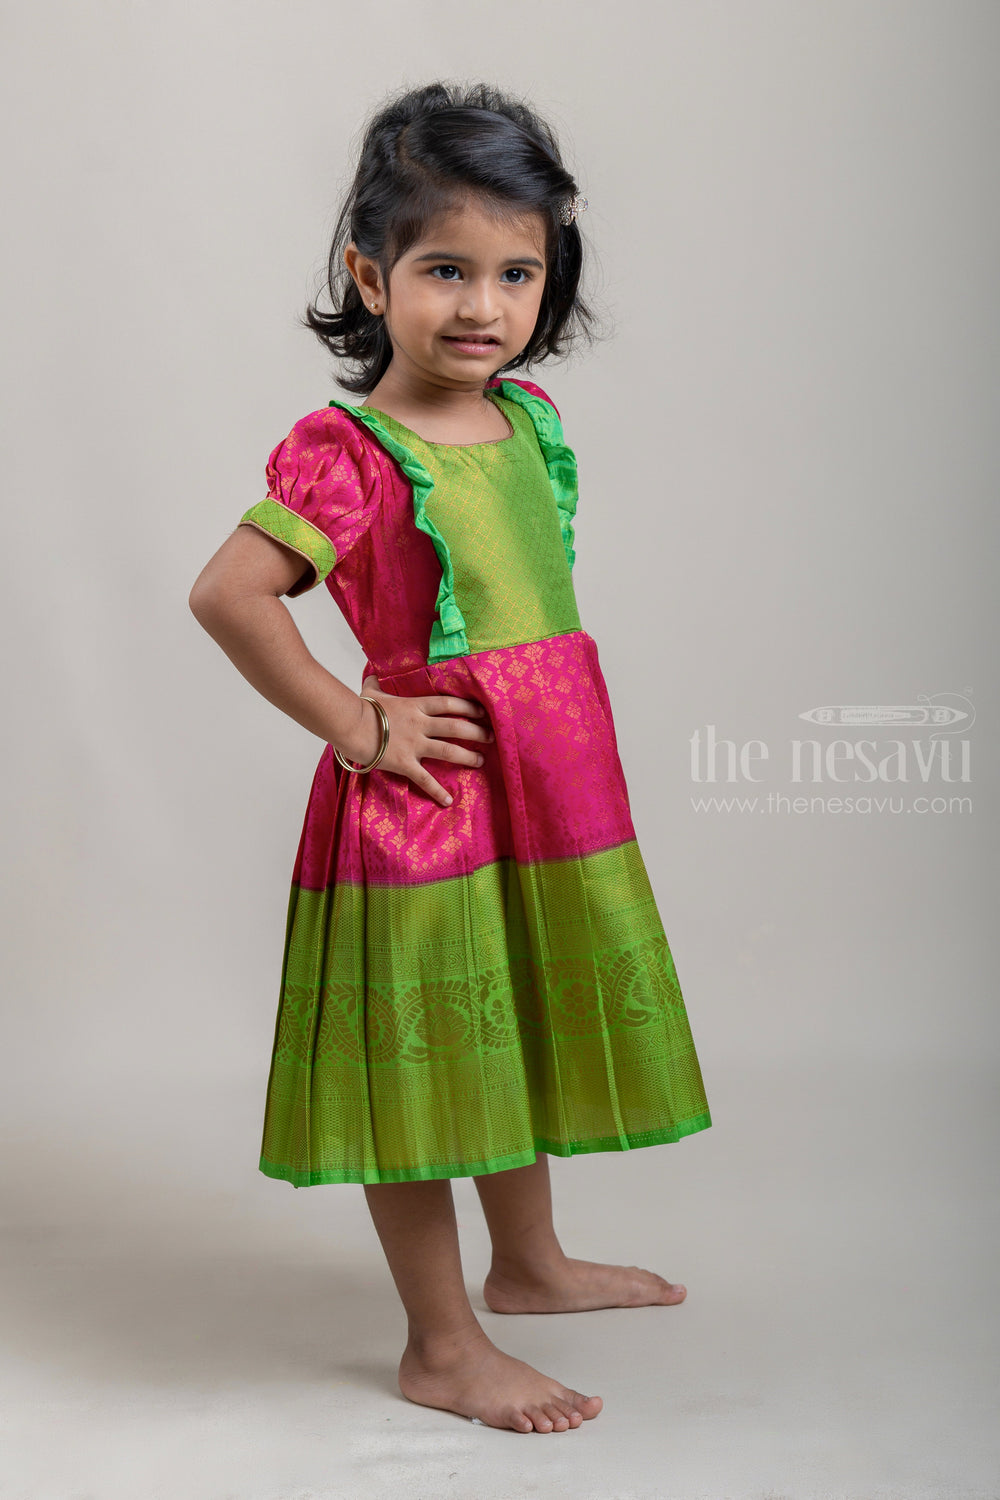 The Nesavu Girls Kanchi Silk Frock Pink with Parrot Green Light Weight Soft Banarasi Pattu / Silk Frock for Little Girls Nesavu Latest Silk frock Collection | Green Silk frock | The Nesavu